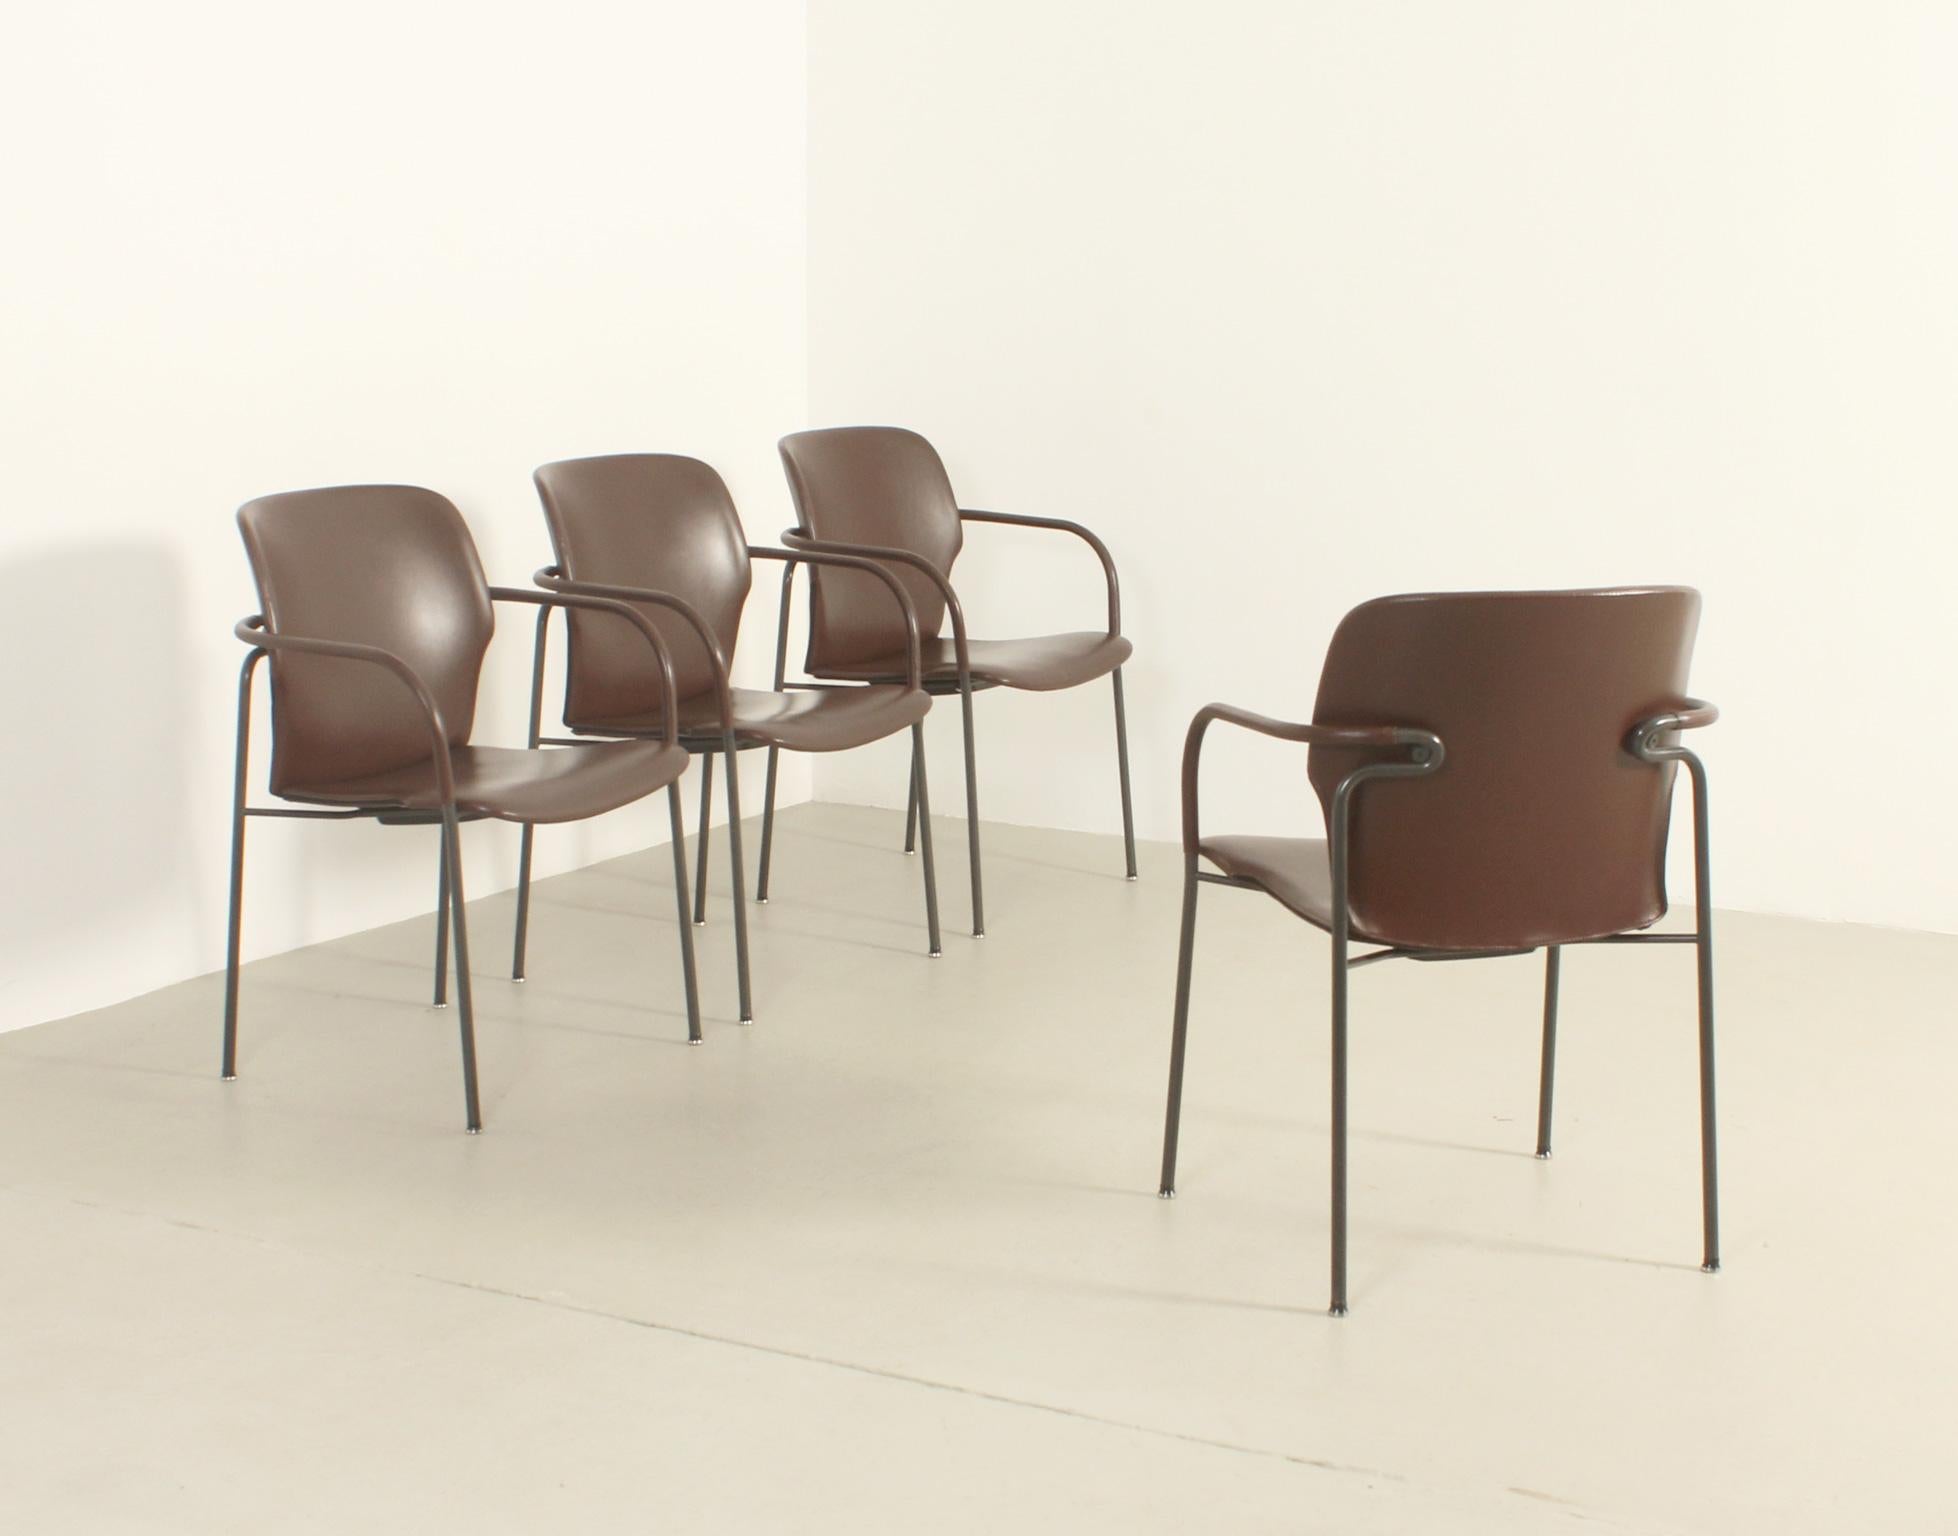 Satz von vier Lalanda-Stühlen, entworfen in den 1980er Jahren von dem italienischen Architekten Gianfranco Frattini für die spanische Firma Kron, Madrid. Metallstruktur lackiert und mit braunem Leder bezogen.